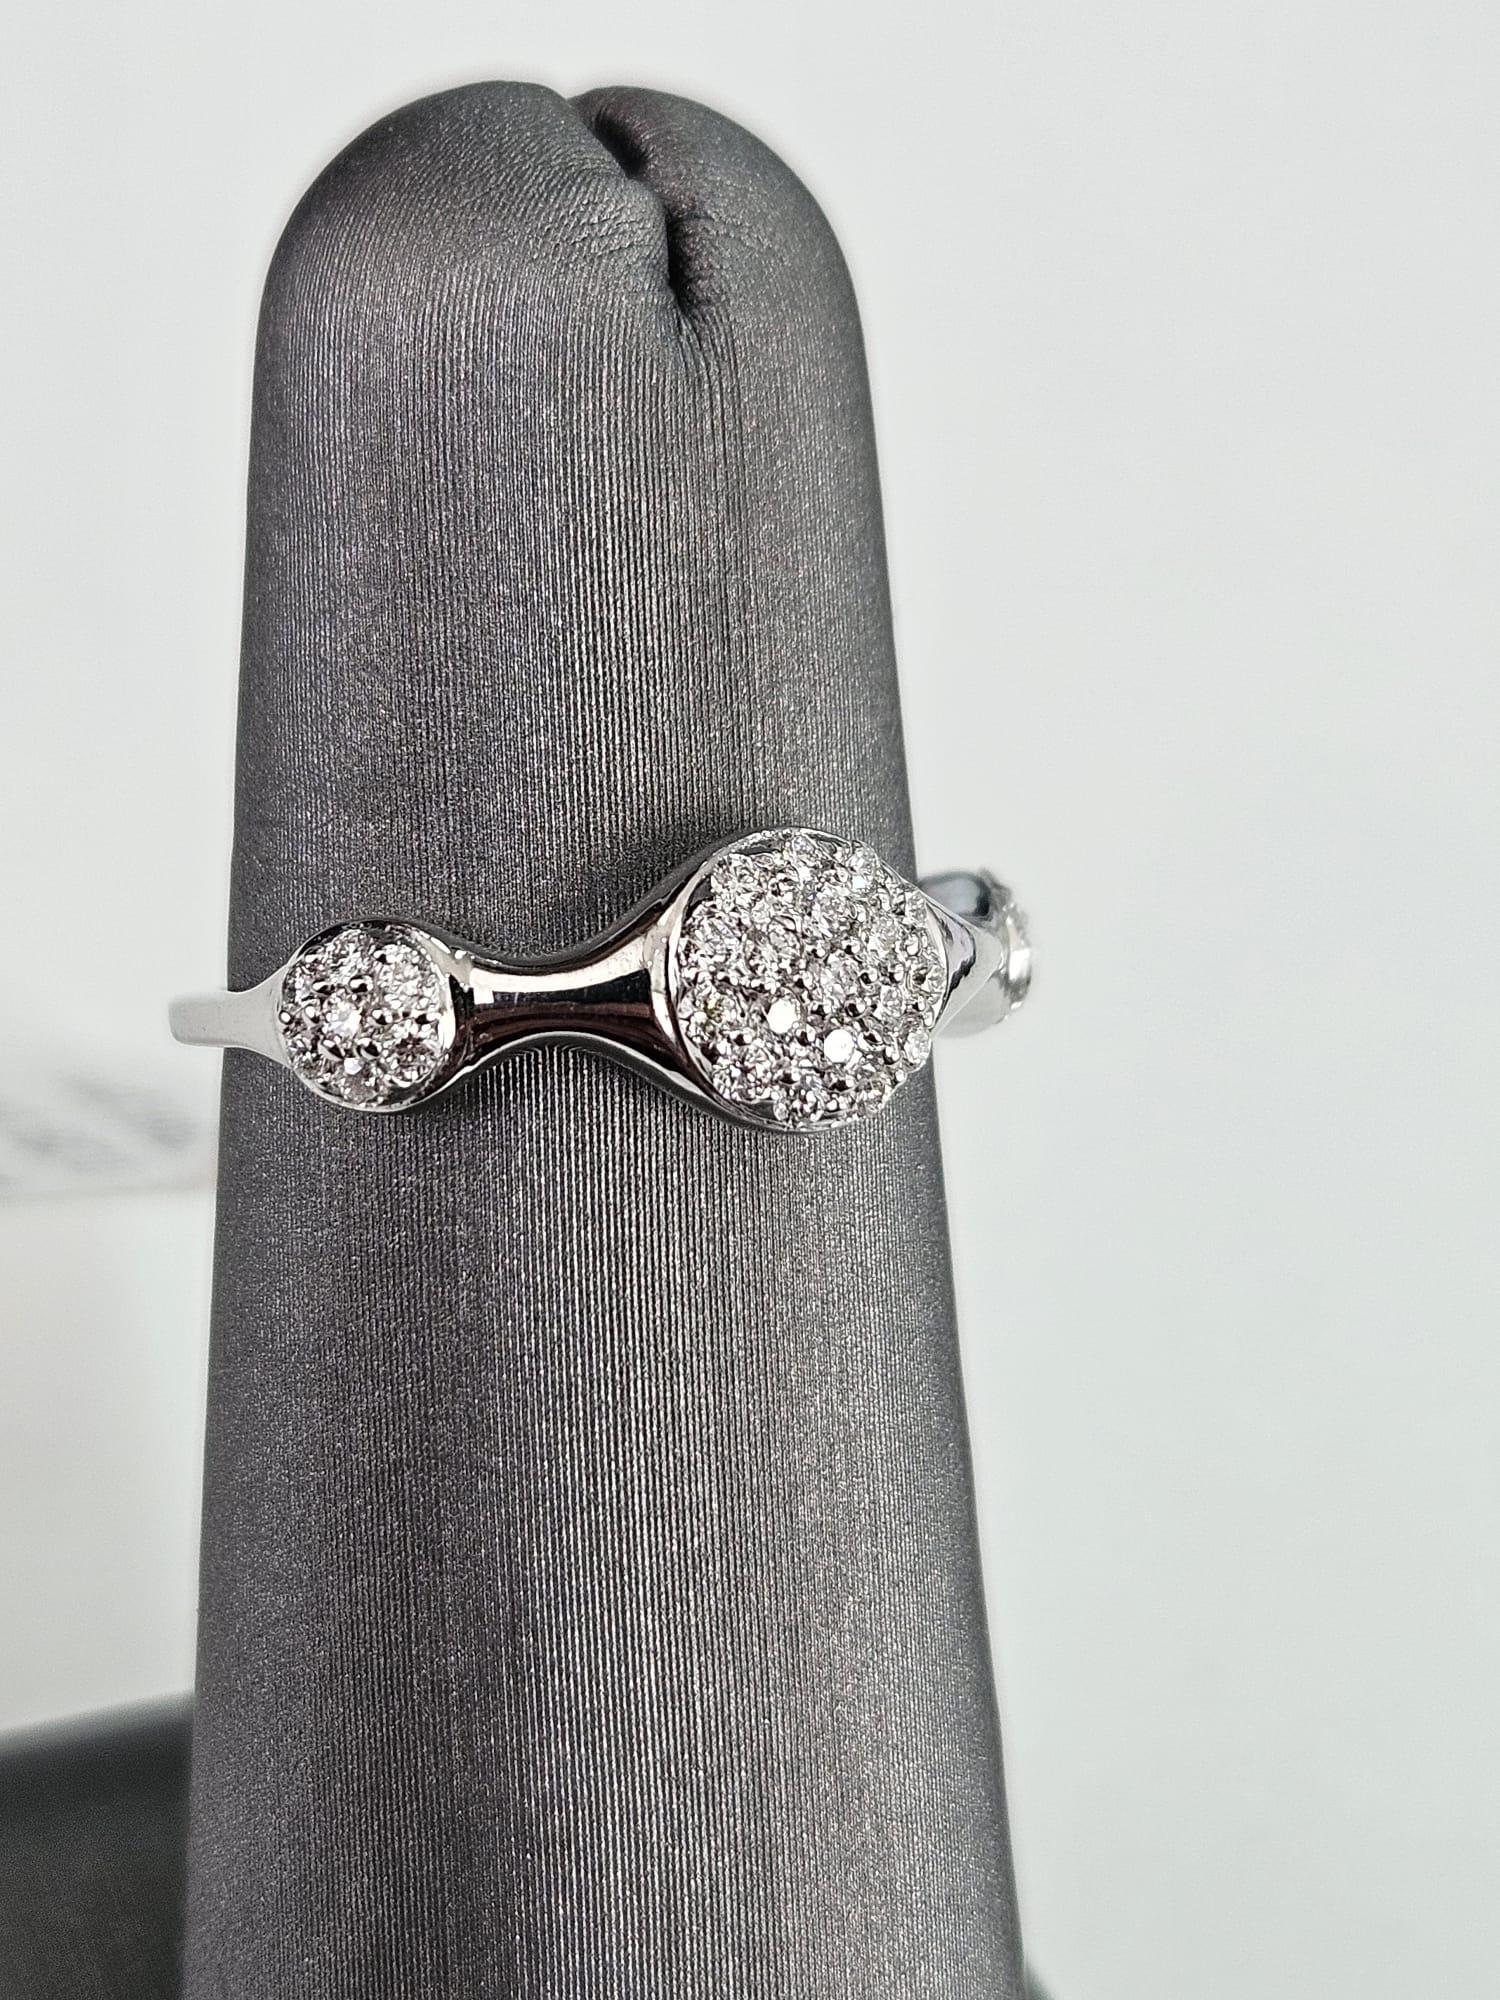 Wir präsentieren einen atemberaubenden Cluster-Ring mit weißen Diamanten, der zeitlose Eleganz und Raffinesse ausstrahlt und ein Gesamtkaratgewicht von 0,28 Karat aufweist. Dieser exquisite Ring zeichnet sich durch drei horizontal ausgerichtete